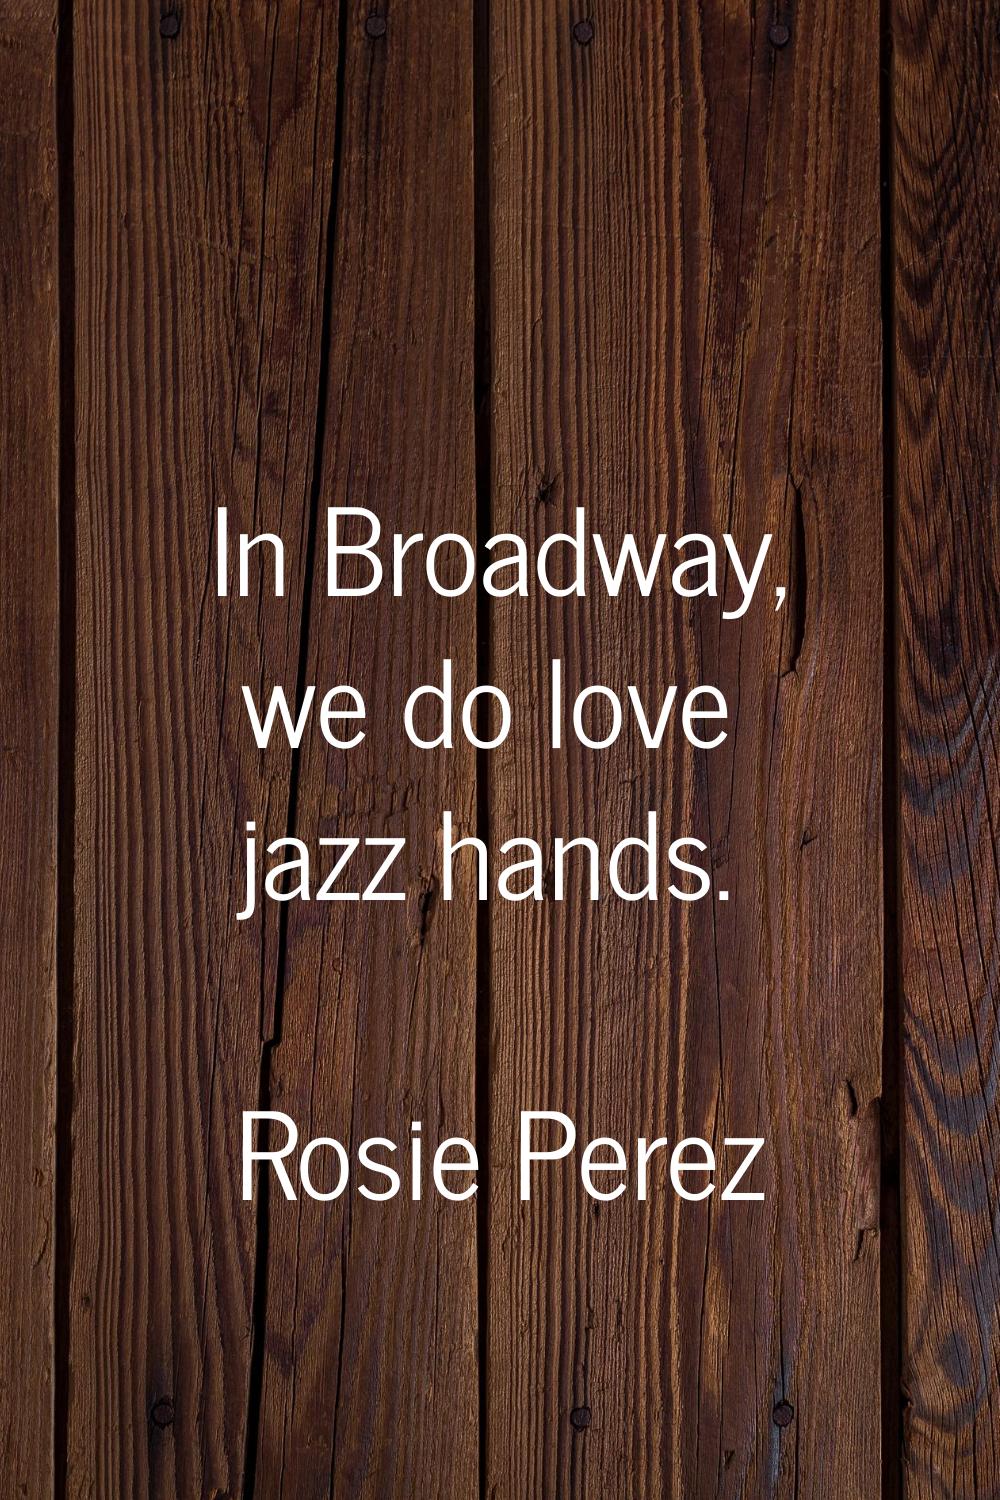 In Broadway, we do love jazz hands.